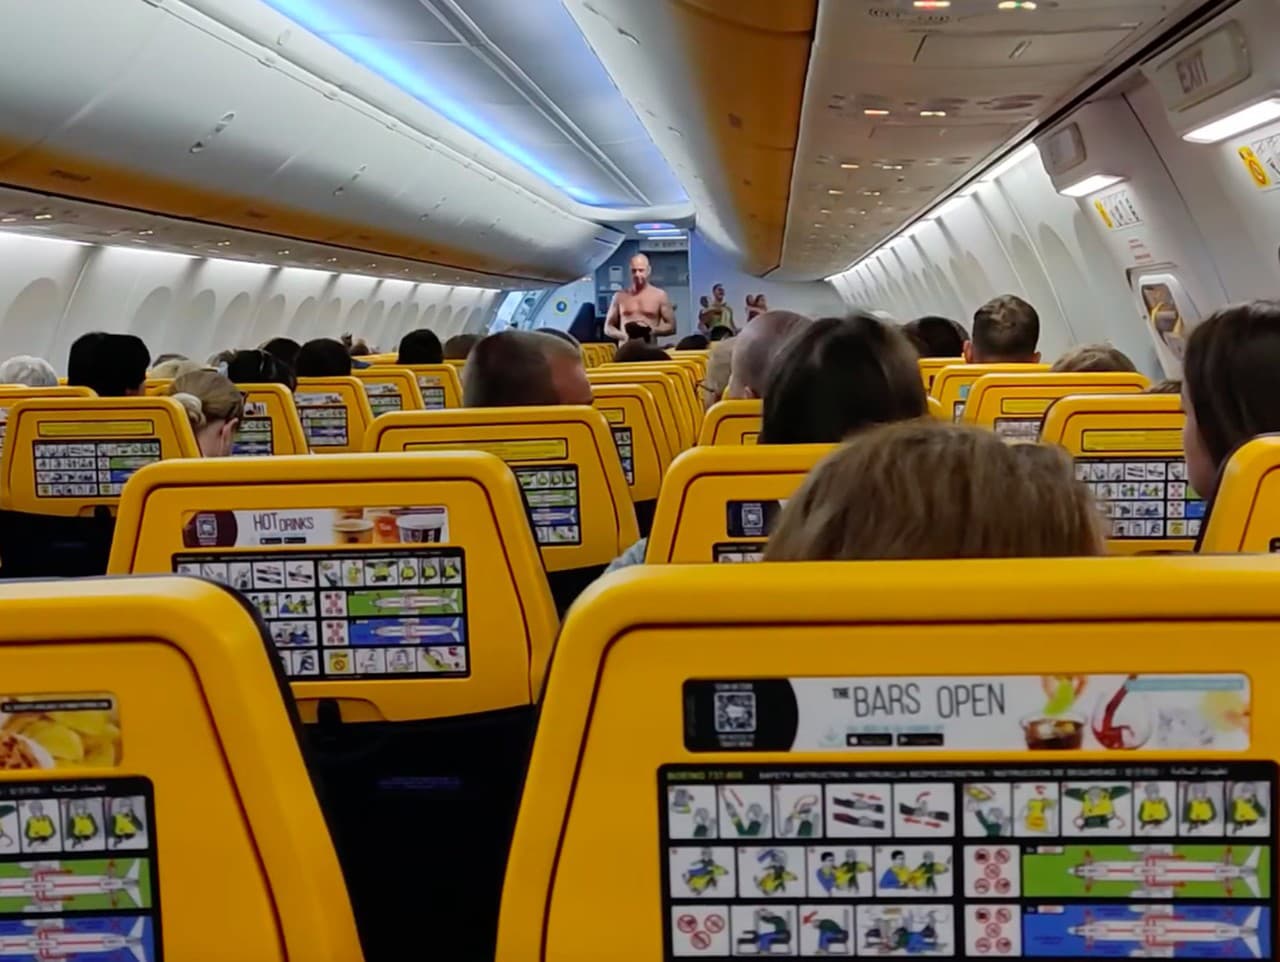 Dráma v Ryanair